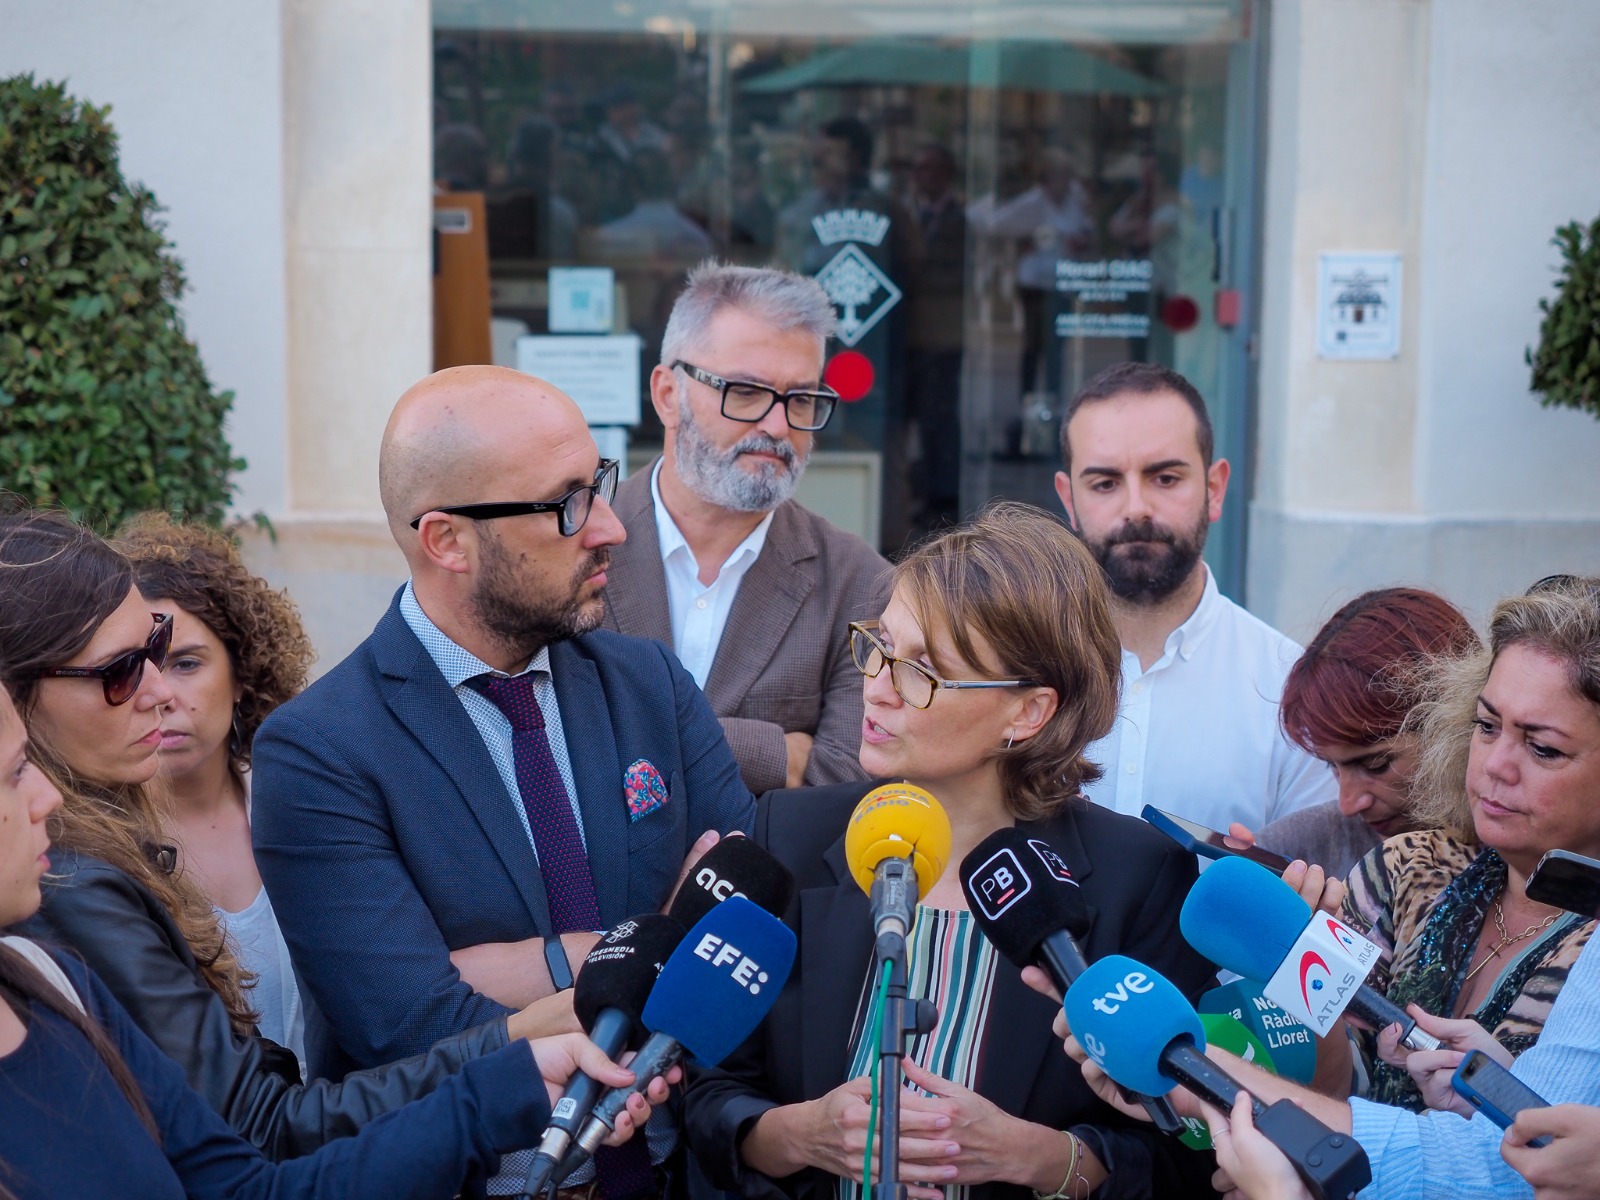 La consellera Meritxell Serret, acompanyada de l'alcalde de Lloret de Mar, en una atenció als mitjans en aquest municipi gironí.